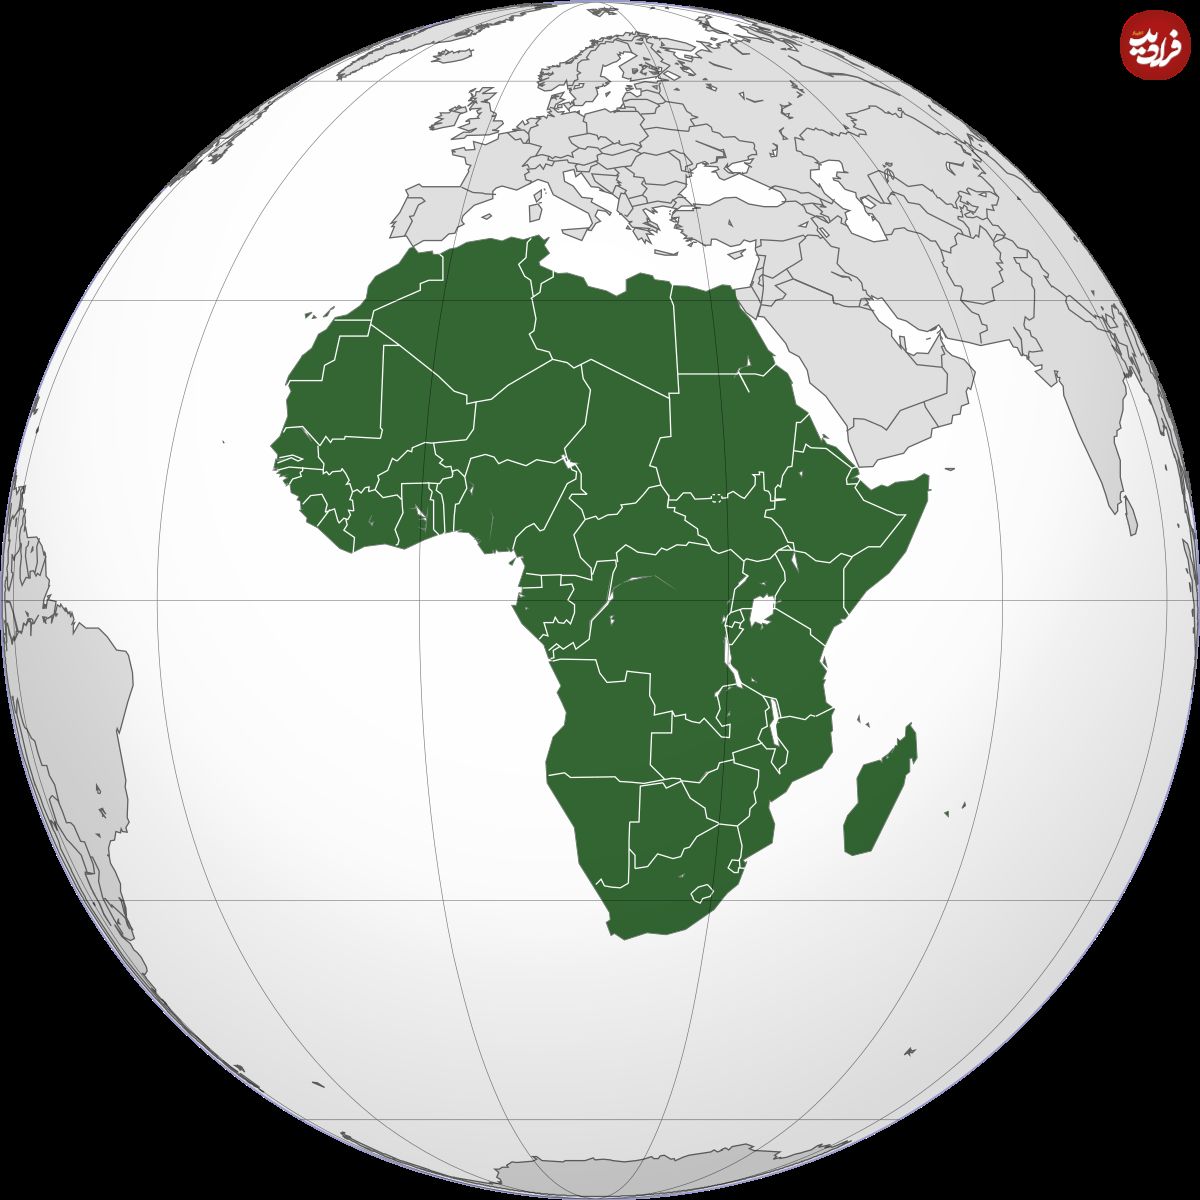 جهانِ سال ۲۱۰۰، در دست آفریقا؟!